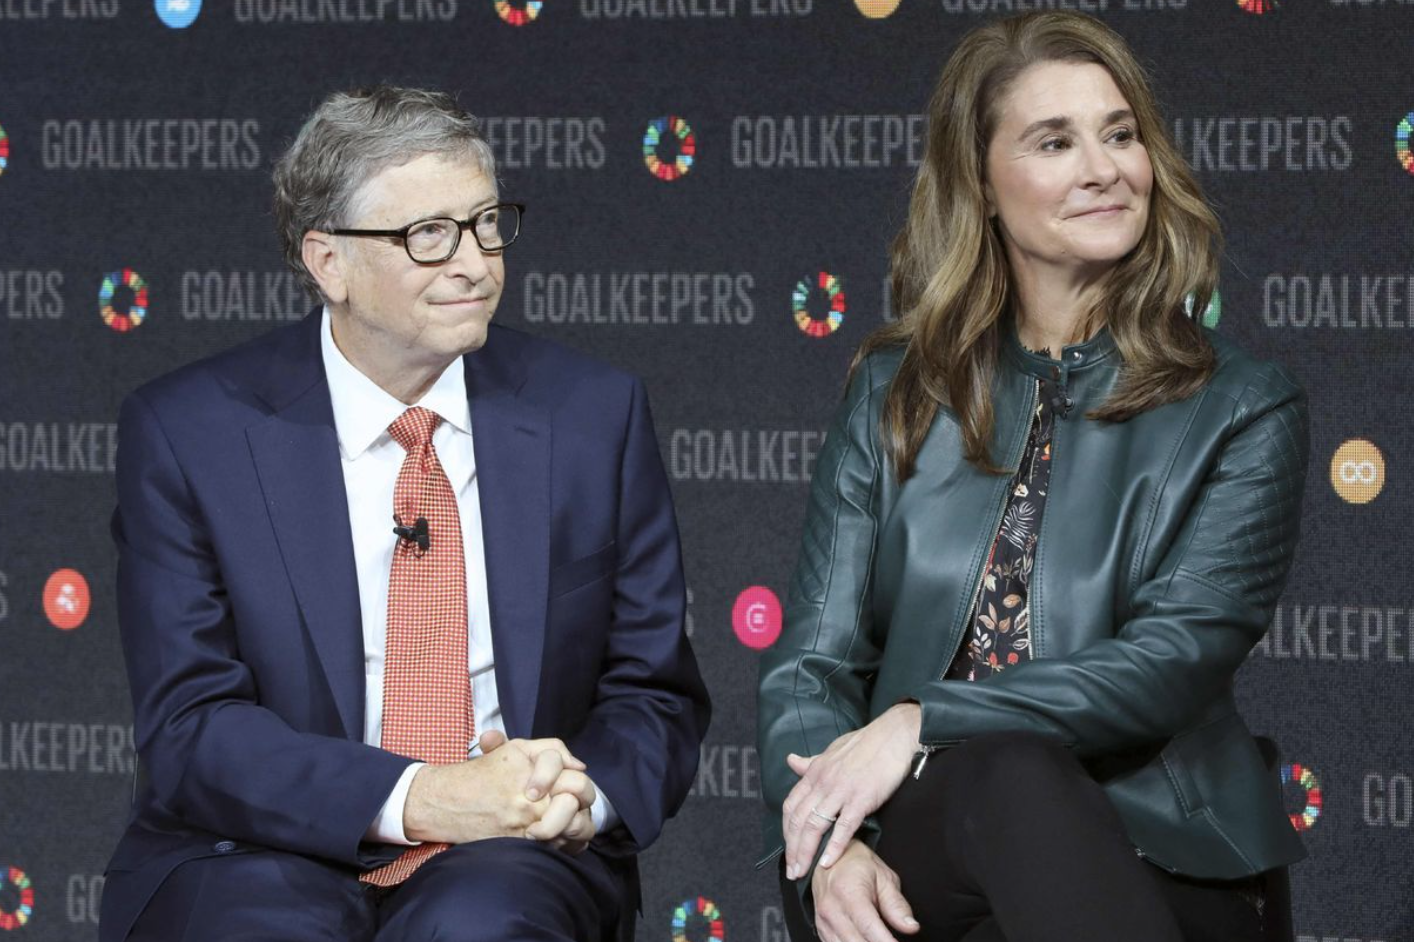 Tiết lộ gây sốc về thái độ của Bill Gates với nhân viên: Bắt nạt, thường xuyên dùng lời lẽ kém văn minh, luôn coi mình là người thông minh nhất- Ảnh 1.